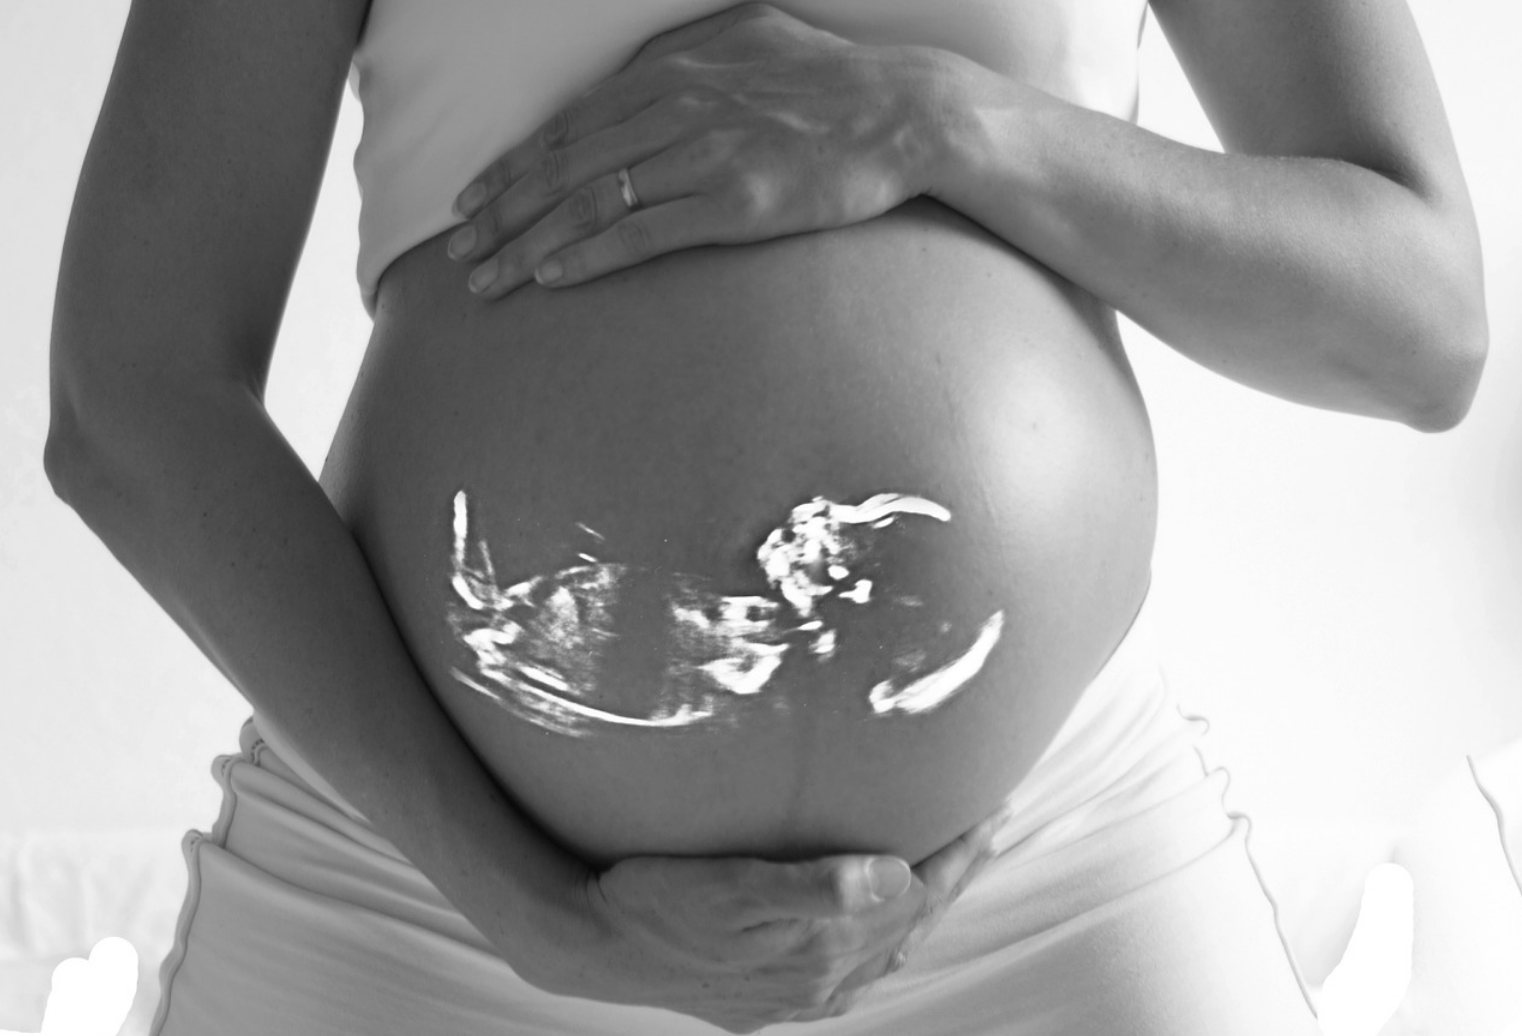 Aborto e perforazione uterina, nuovi casi. Ecco cosa rischiano le donne 1